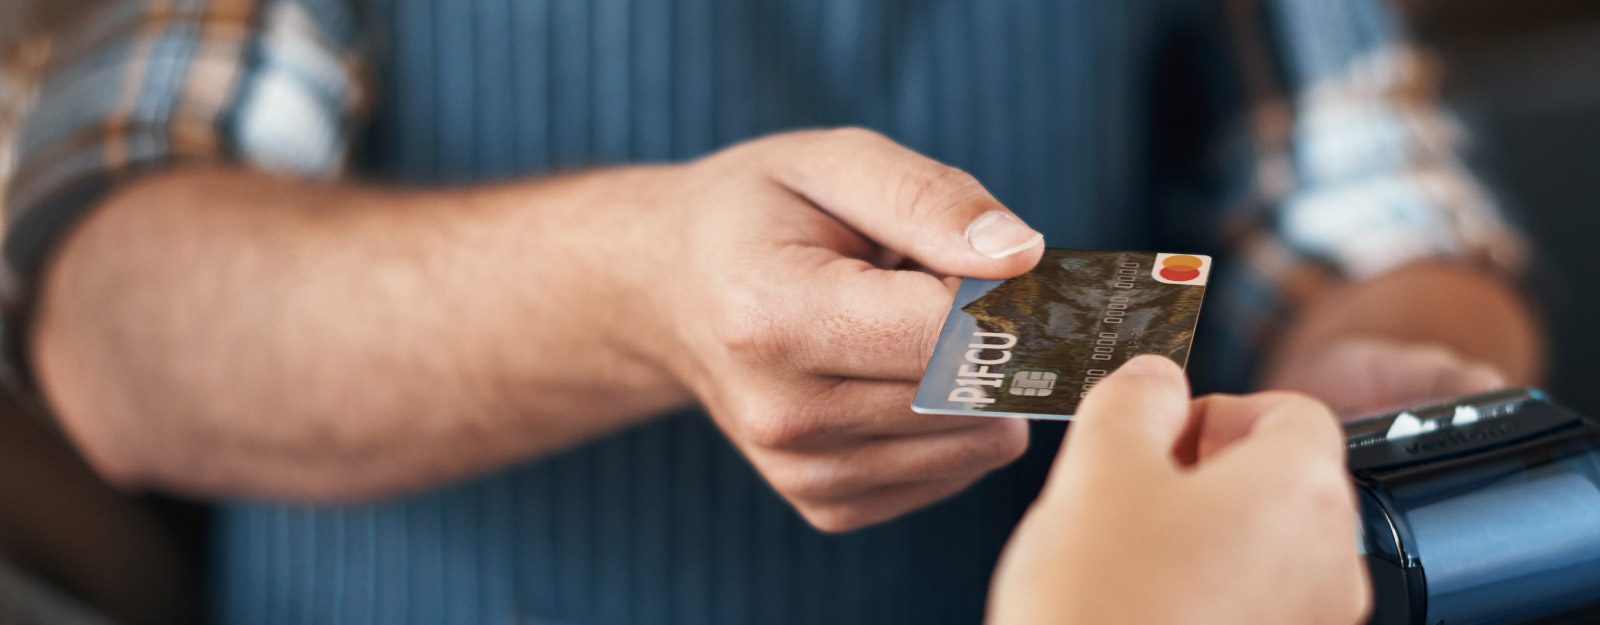 Person handing over P1FCU debit card